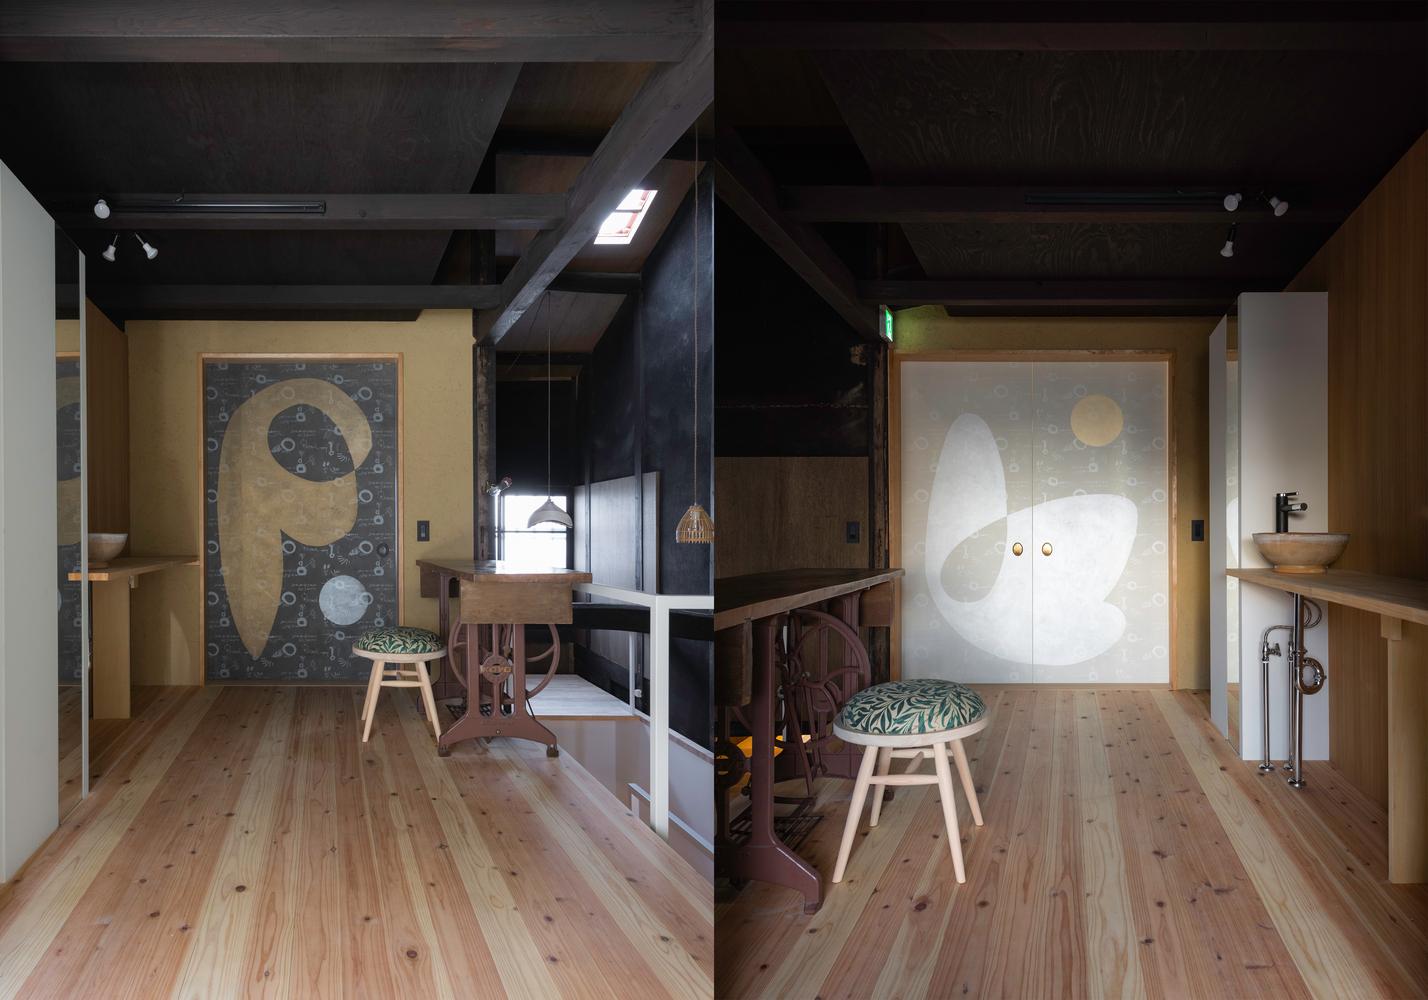 【工匠手藝 x 百年建築】改建自京都町屋的家庭式旅館 結合日本傳統的創意空間